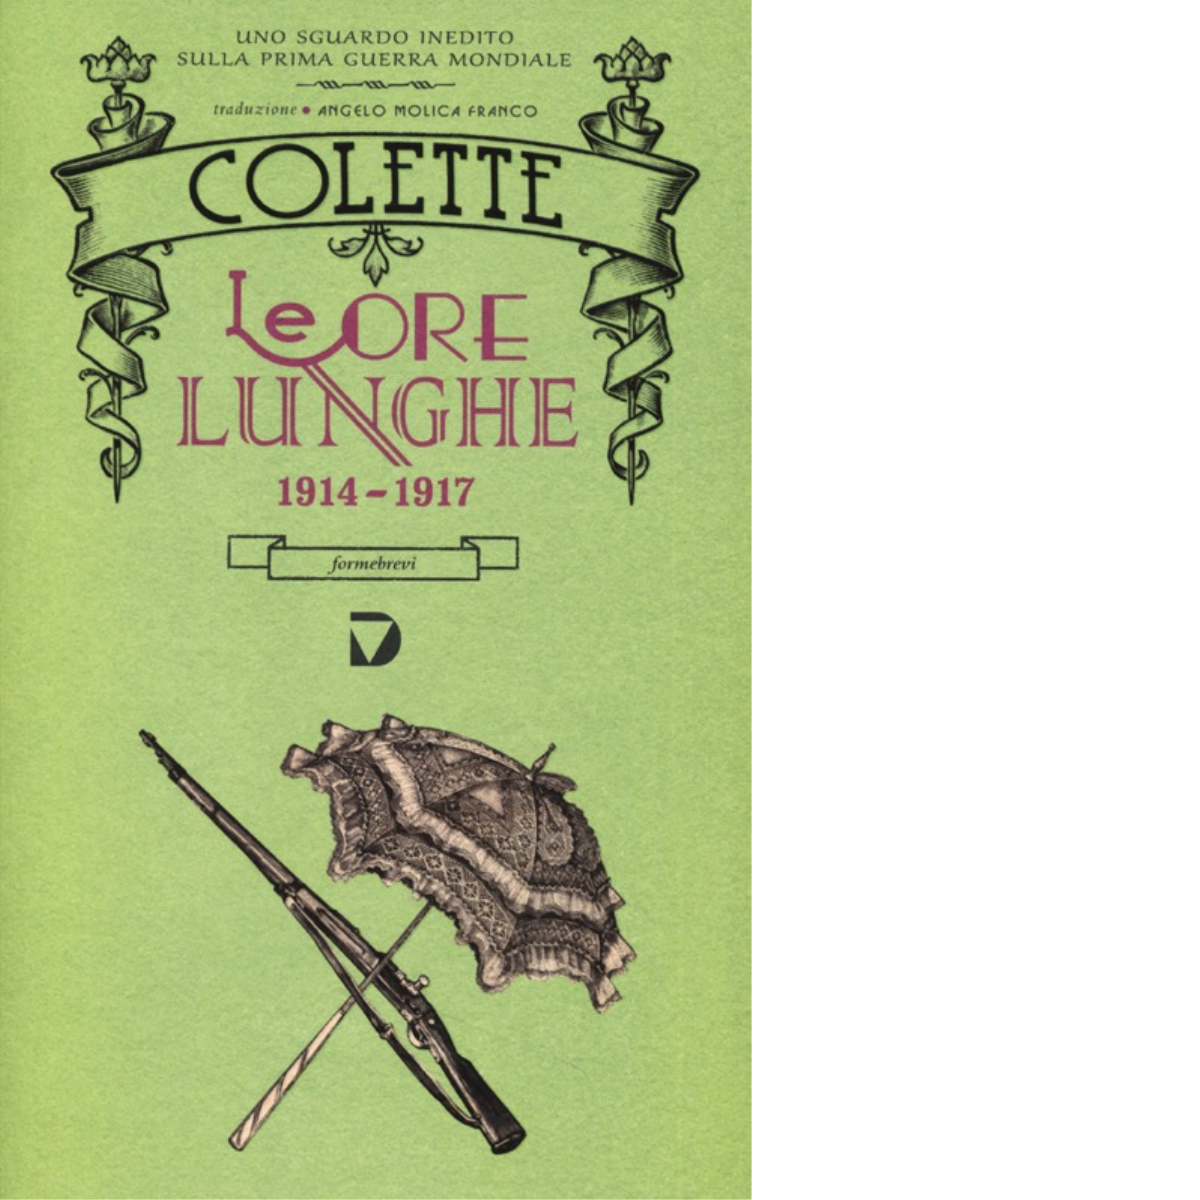 Le ore lunghe 1914-1917 di Colette - Del Vecchio editore, 2013